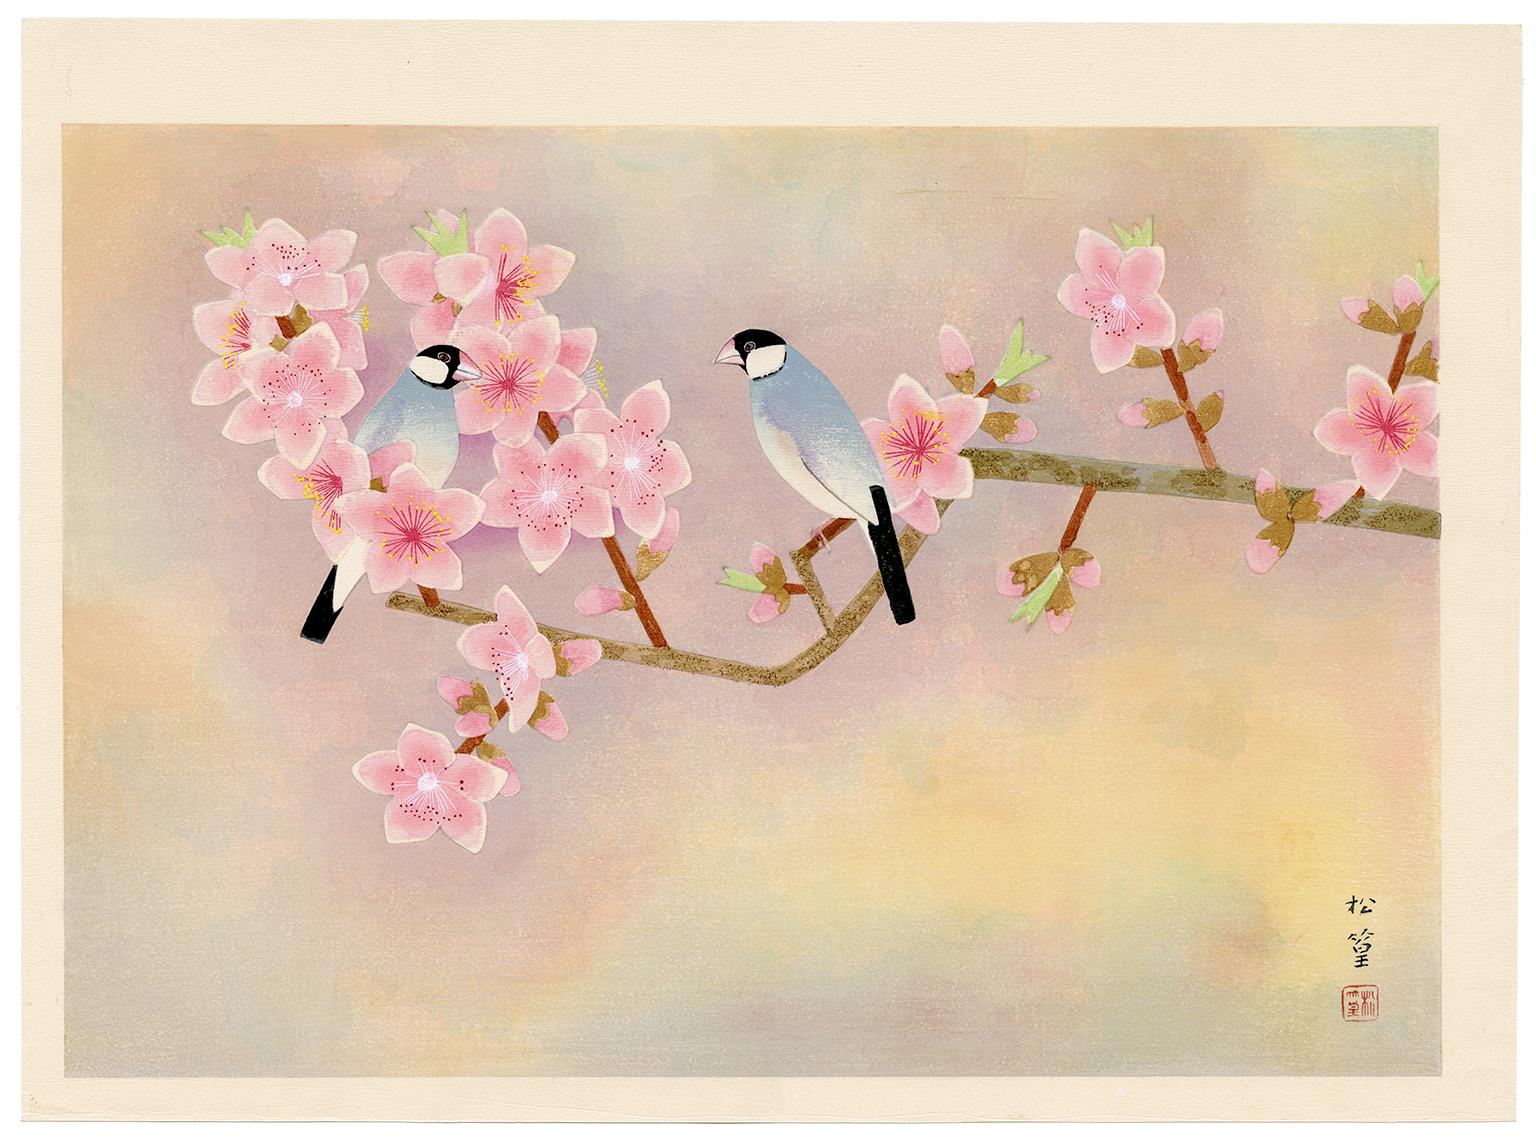 The Flowers (Java Sparrow und Pfirsichblüten) - Japanischer Farbholzschnitt, 1950